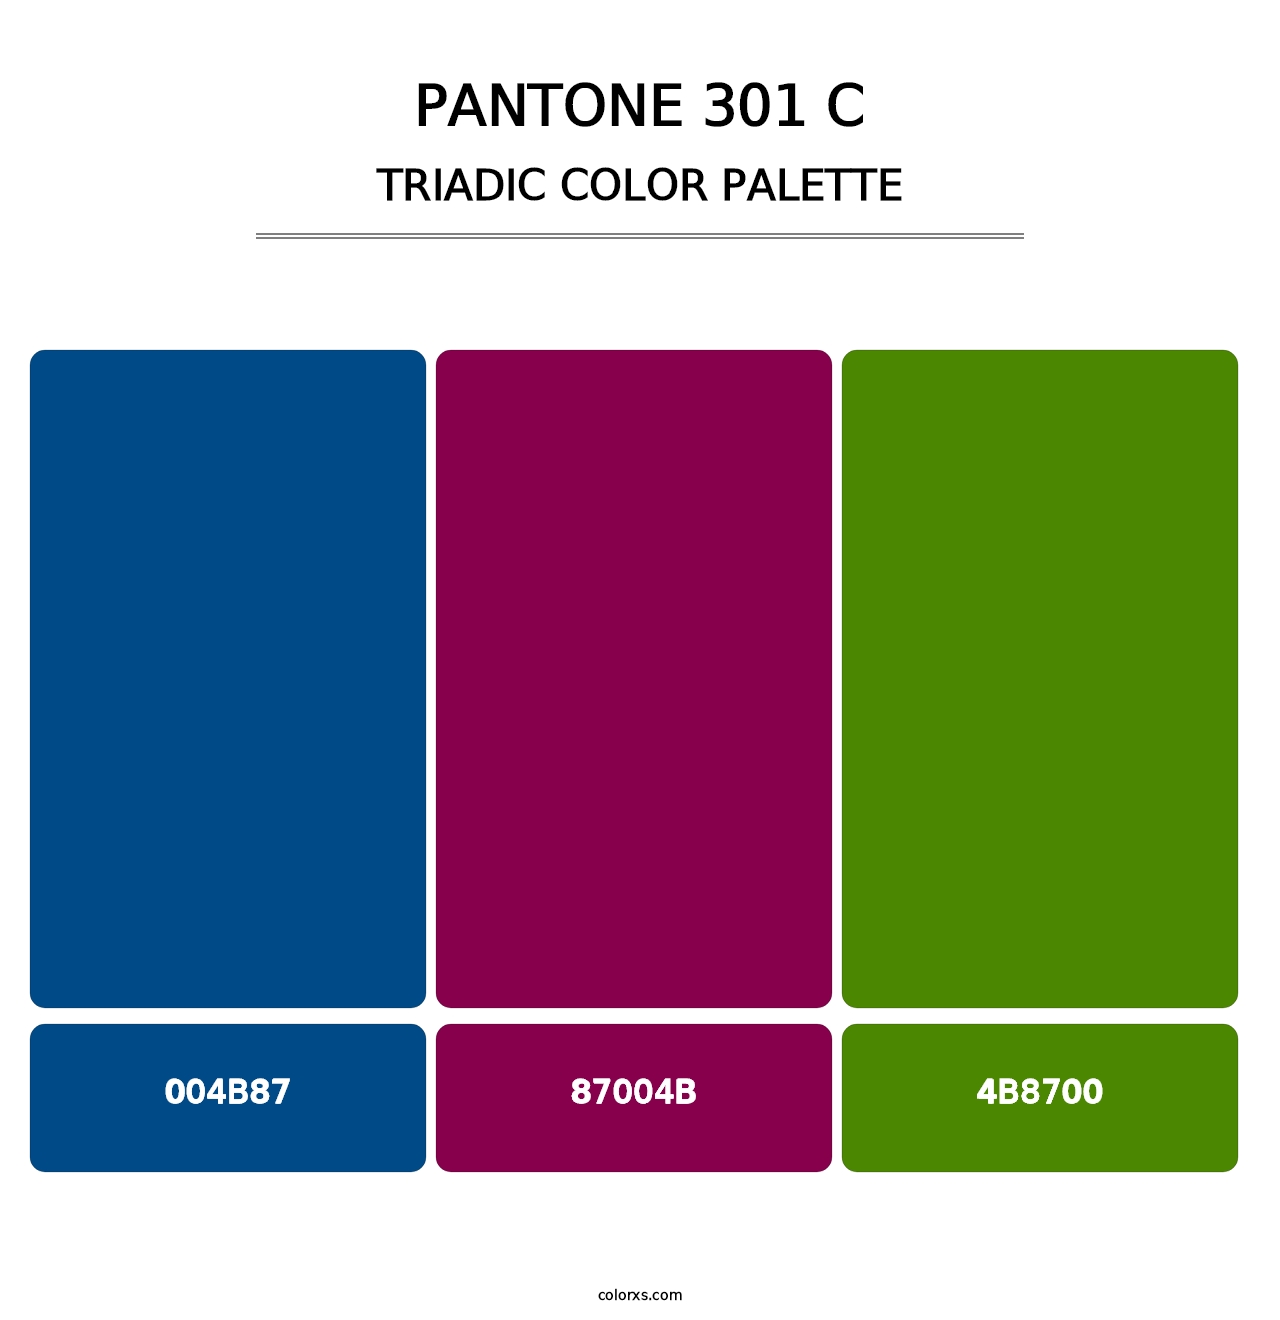 PANTONE 301 C - Triadic Color Palette